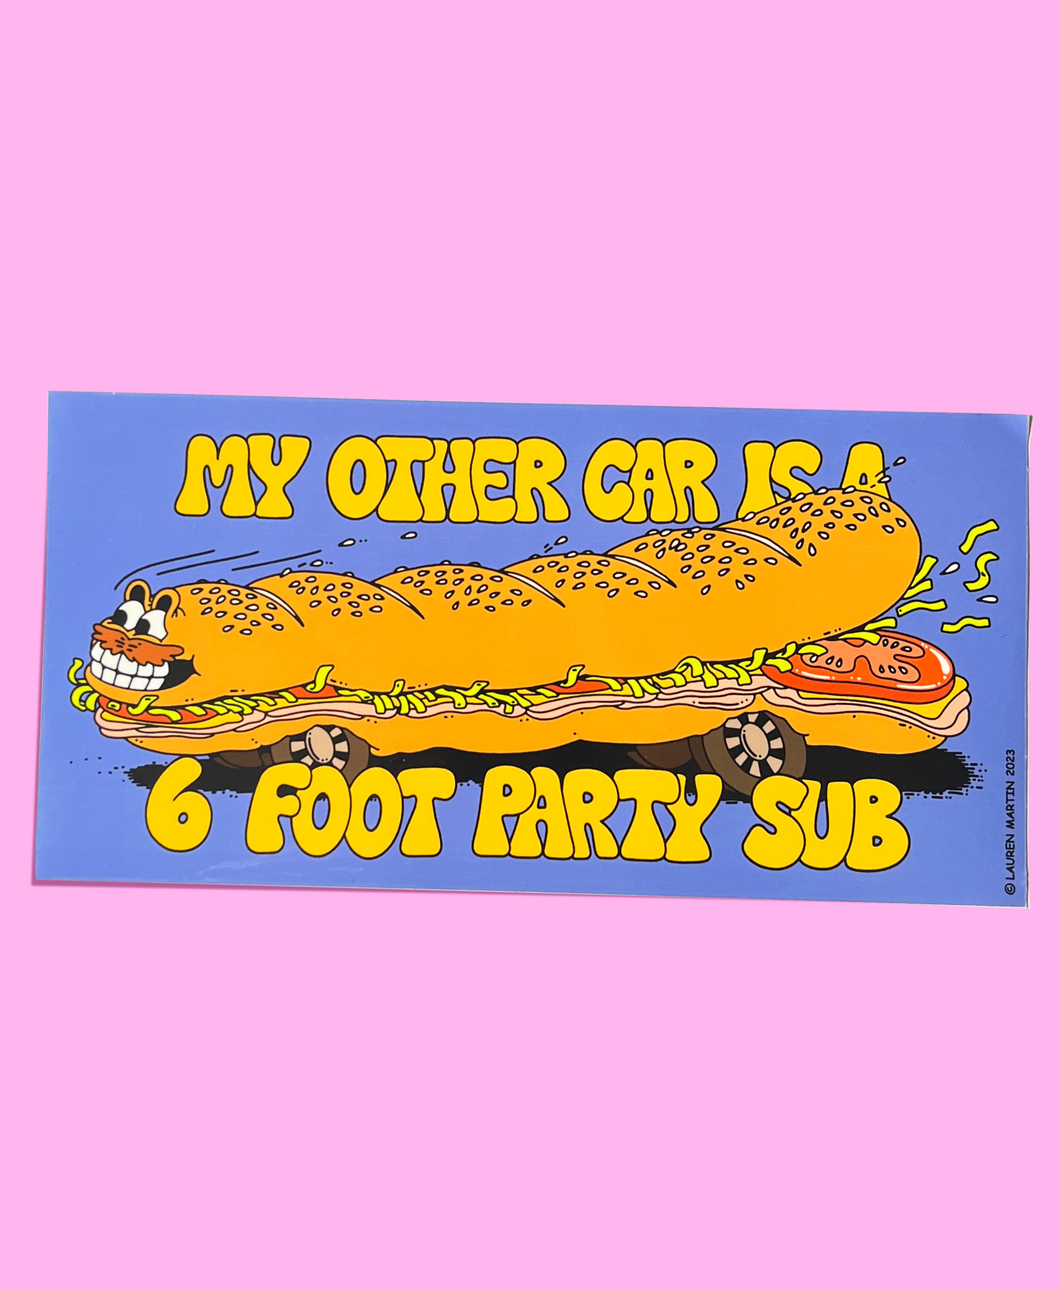 'Party Sub' Bumper Sticker